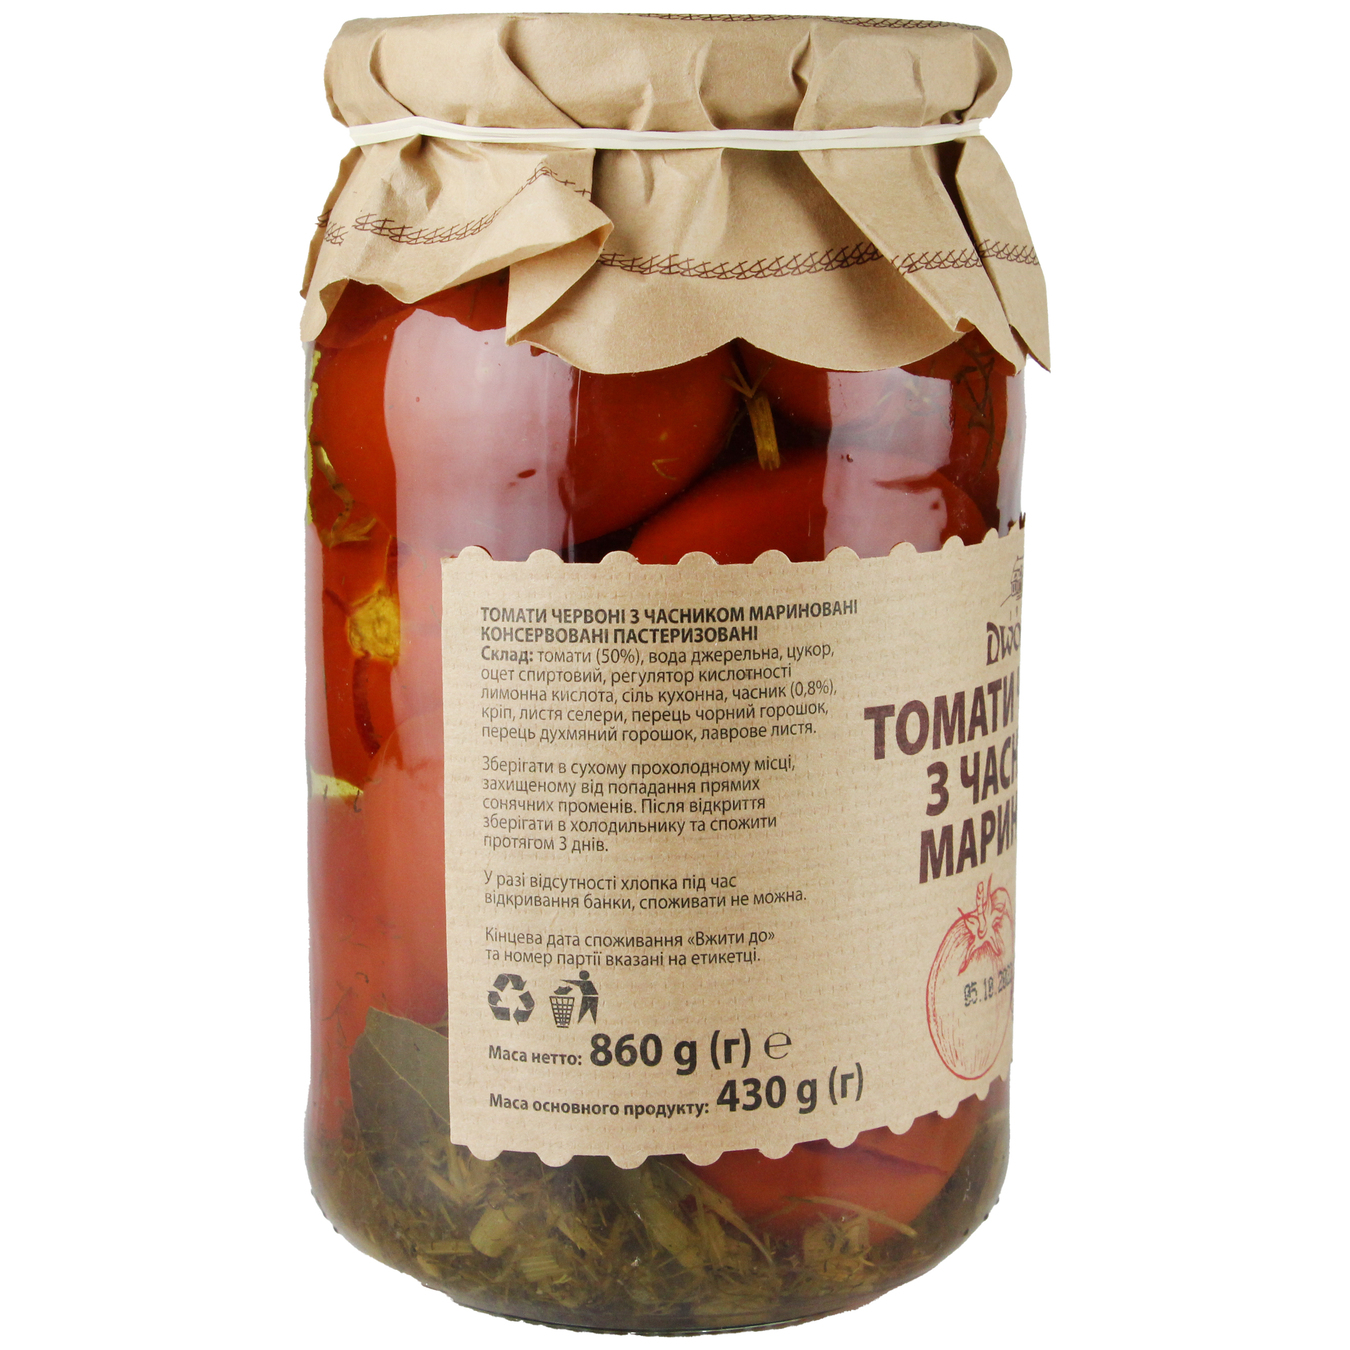 Dworek-1905 With Garlic Tomatoes 880g 2